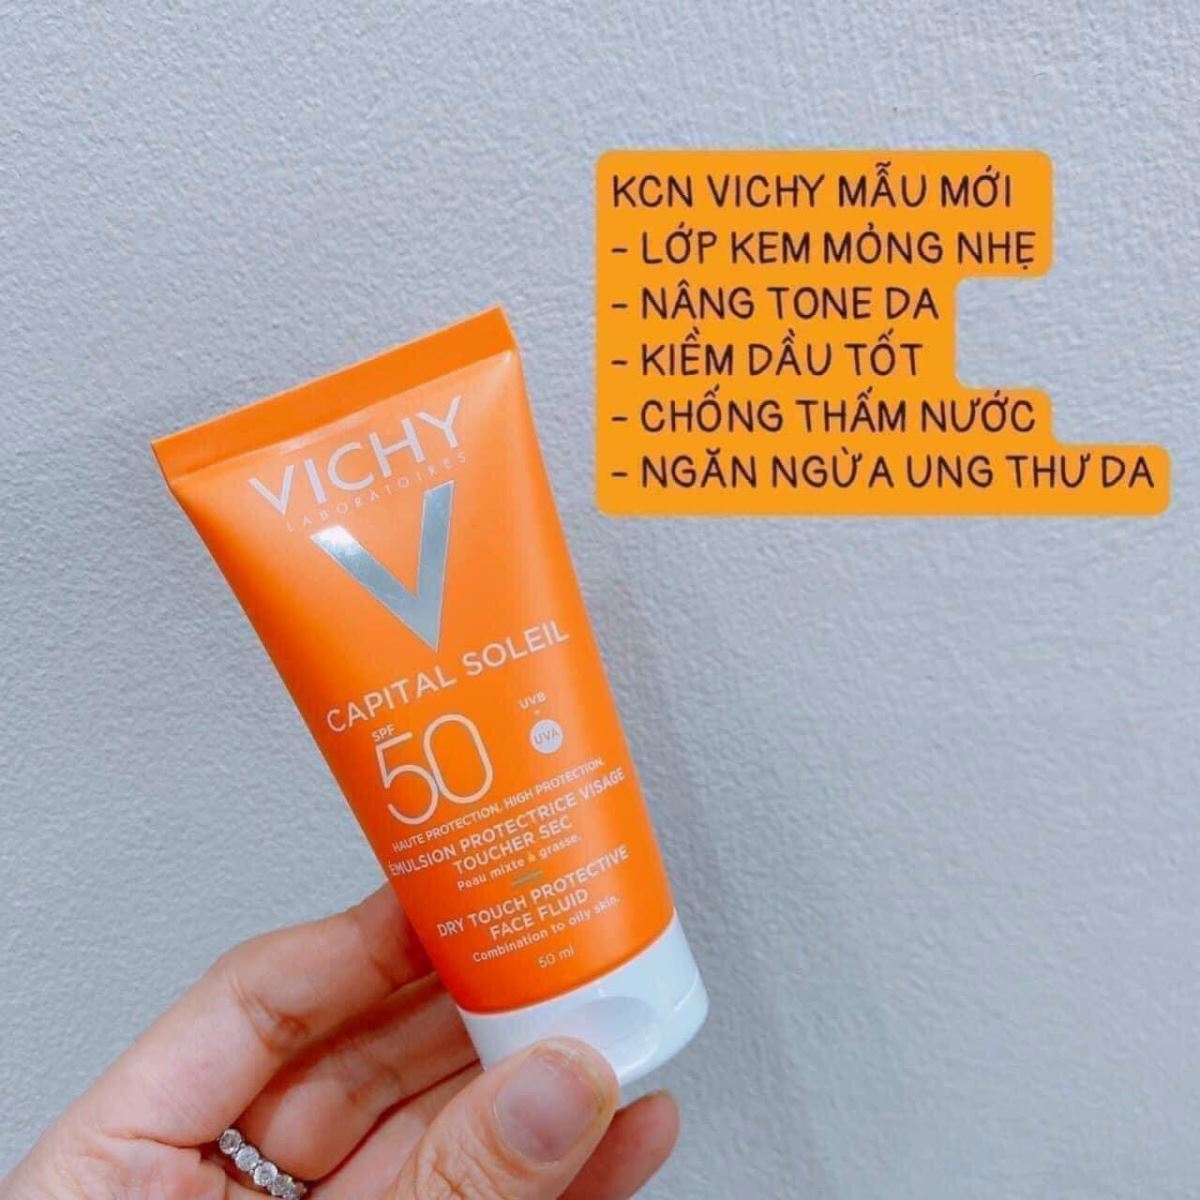 Kem chống nắng, VICHY Capital Soleil Anti-Shine SPF 50 - Tuýp 50ml